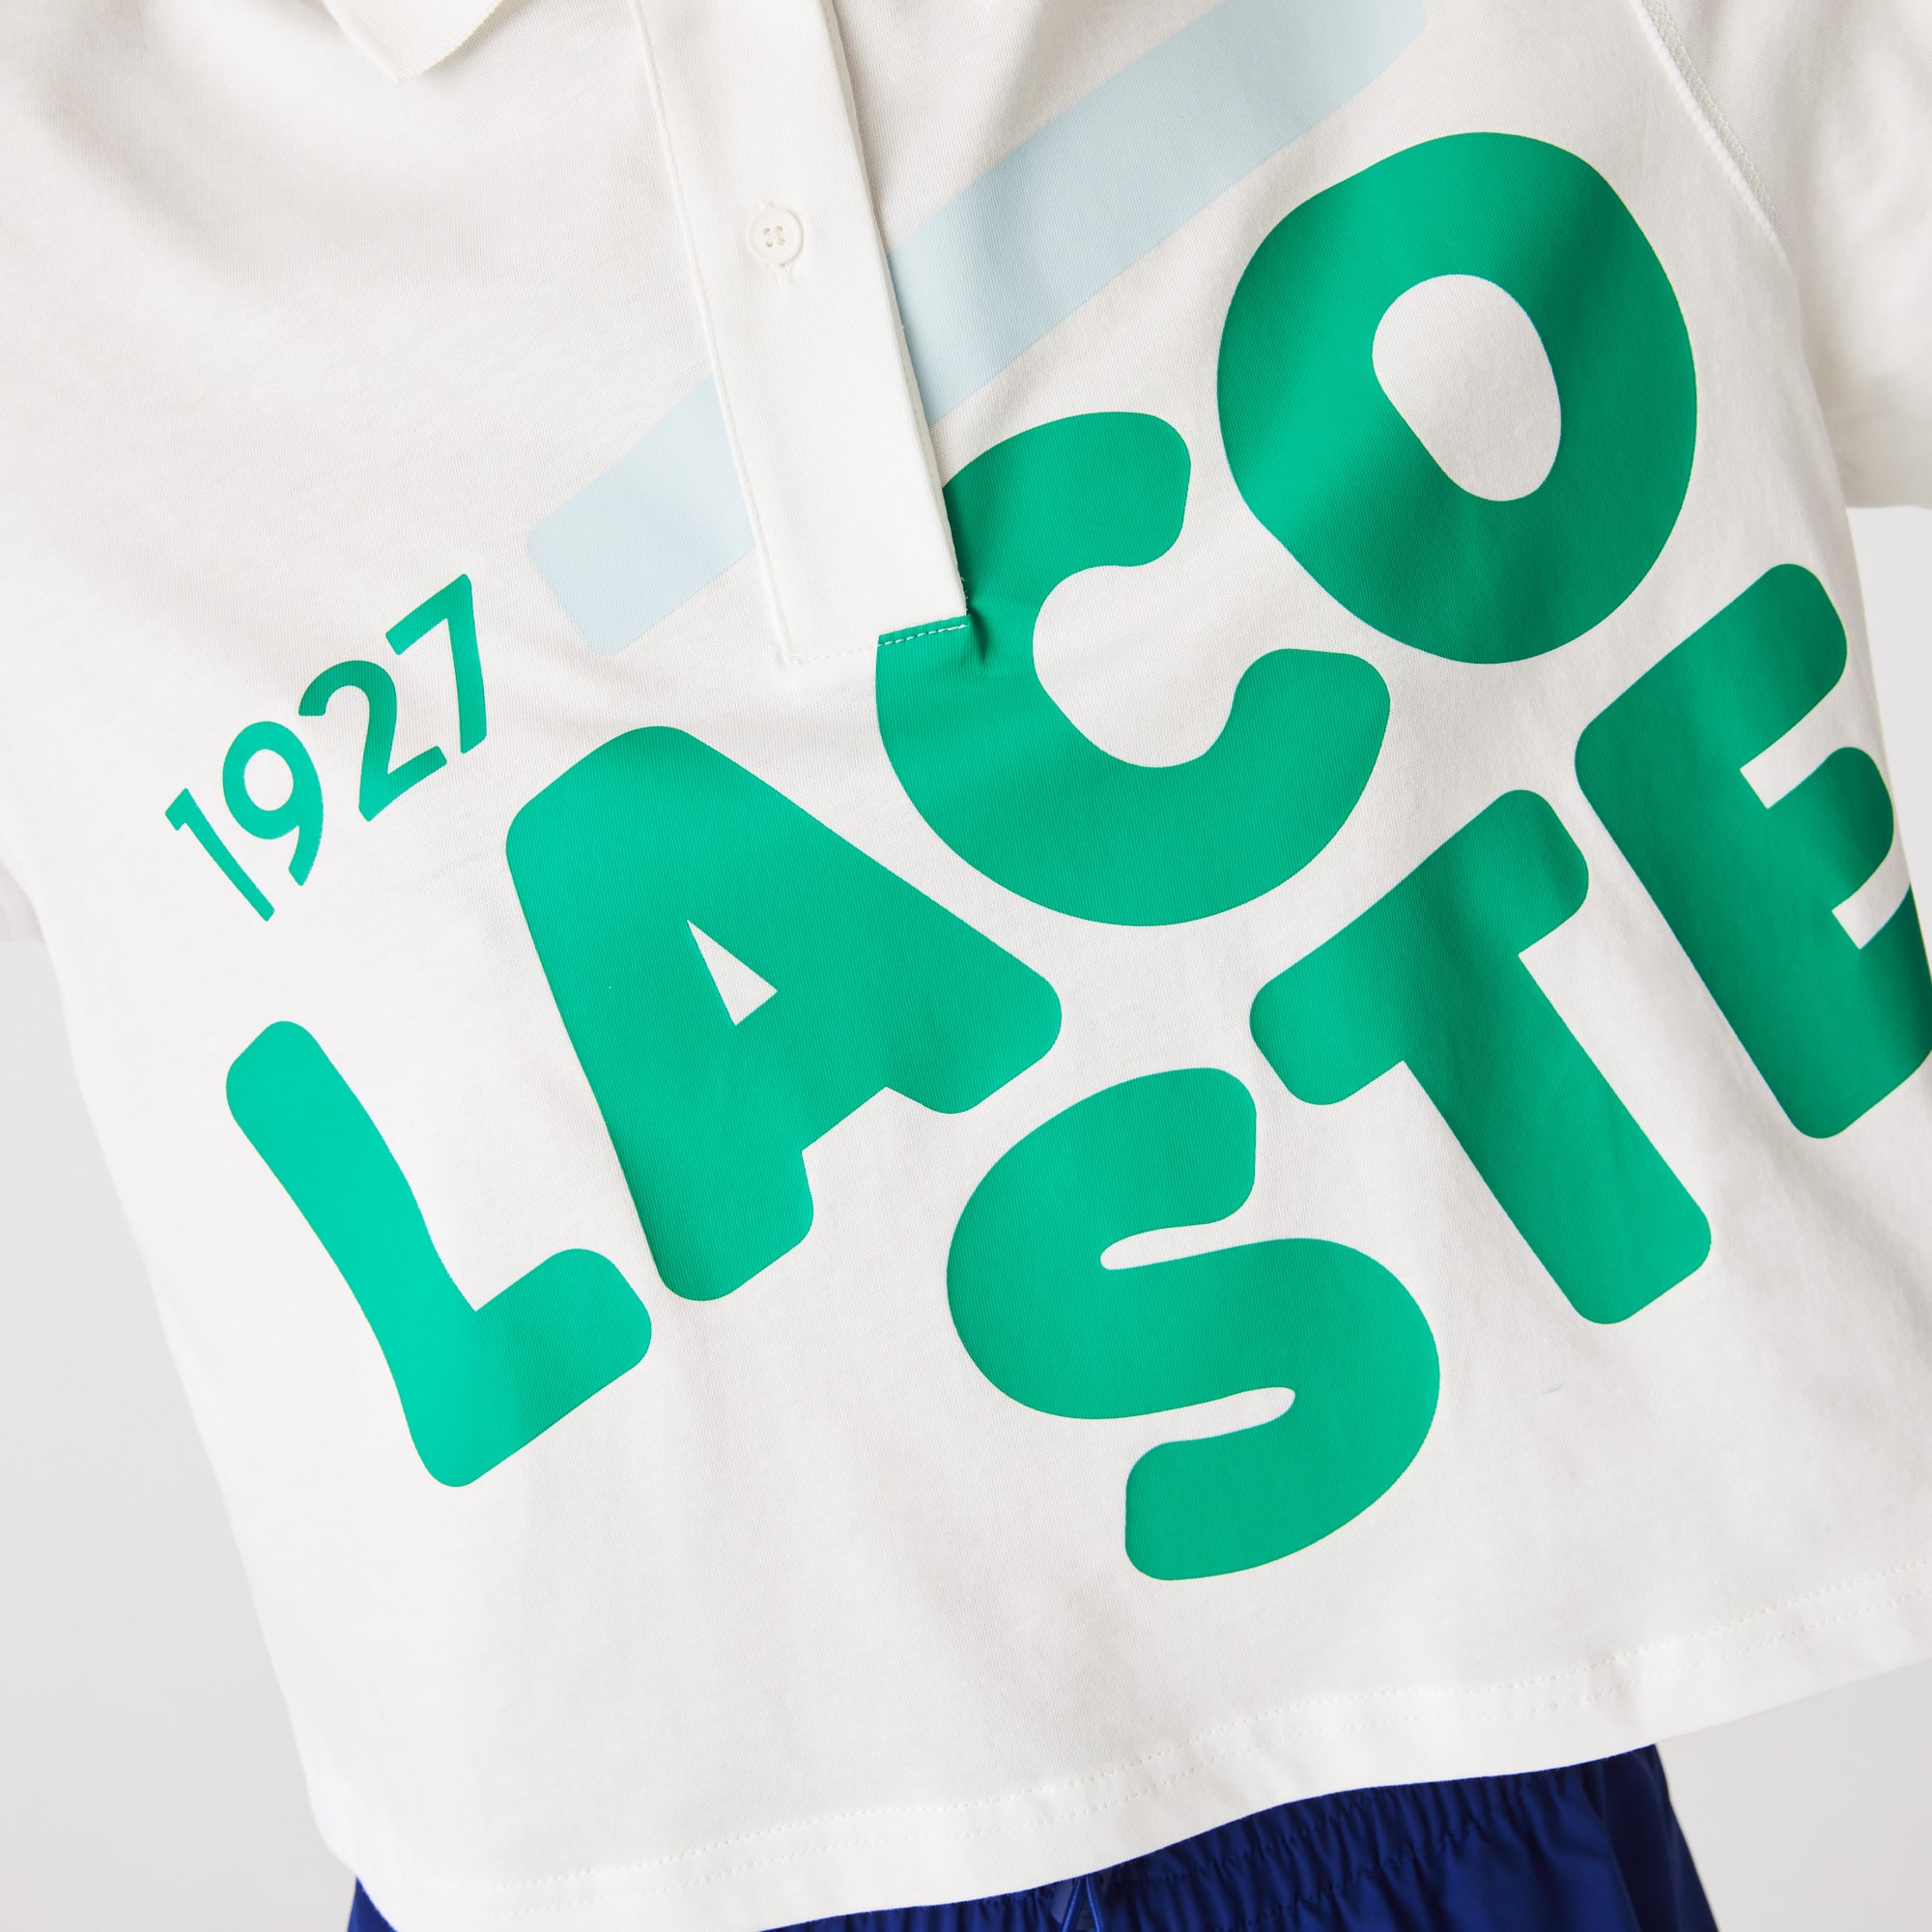 라코스테 Lacoste Womens Loose Fit Short Print Organic Cotton Polo